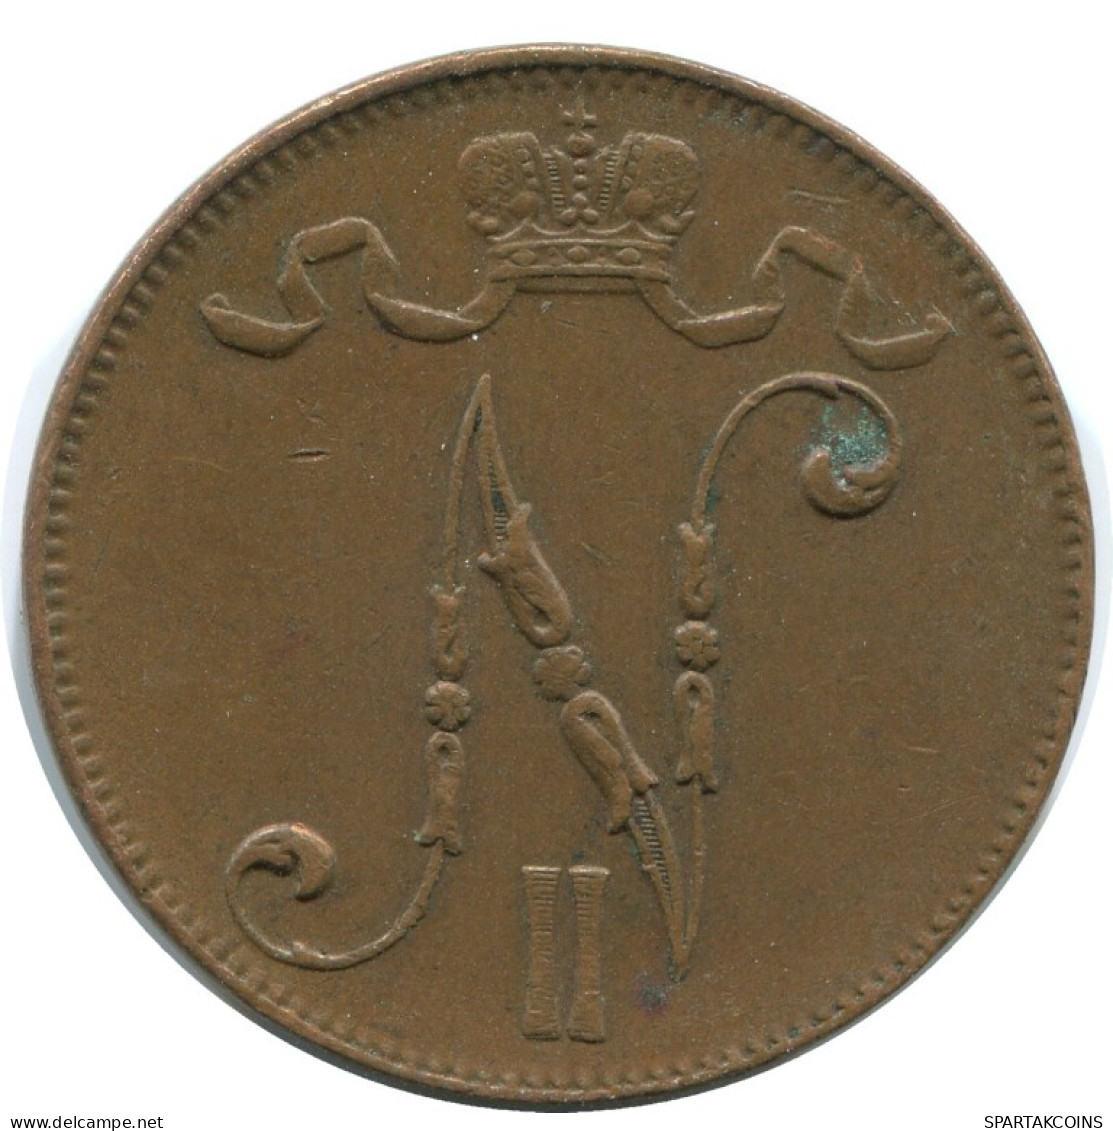 5 PENNIA 1916 FINLAND Coin RUSSIA EMPIRE #AB194.5.U.A - Finland